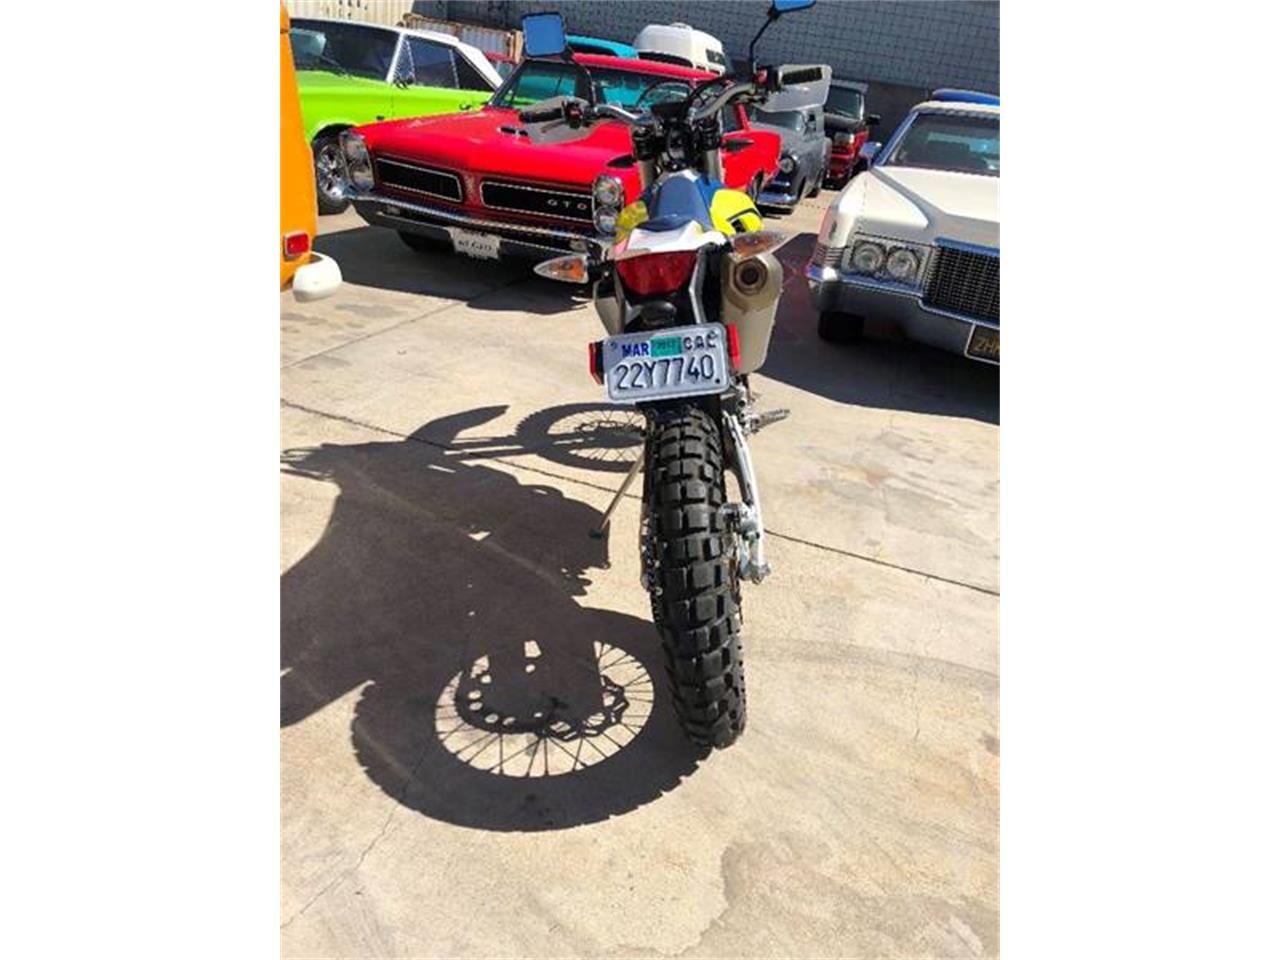 2016 Husqvarna Motorcycle for sale in Brea, CA